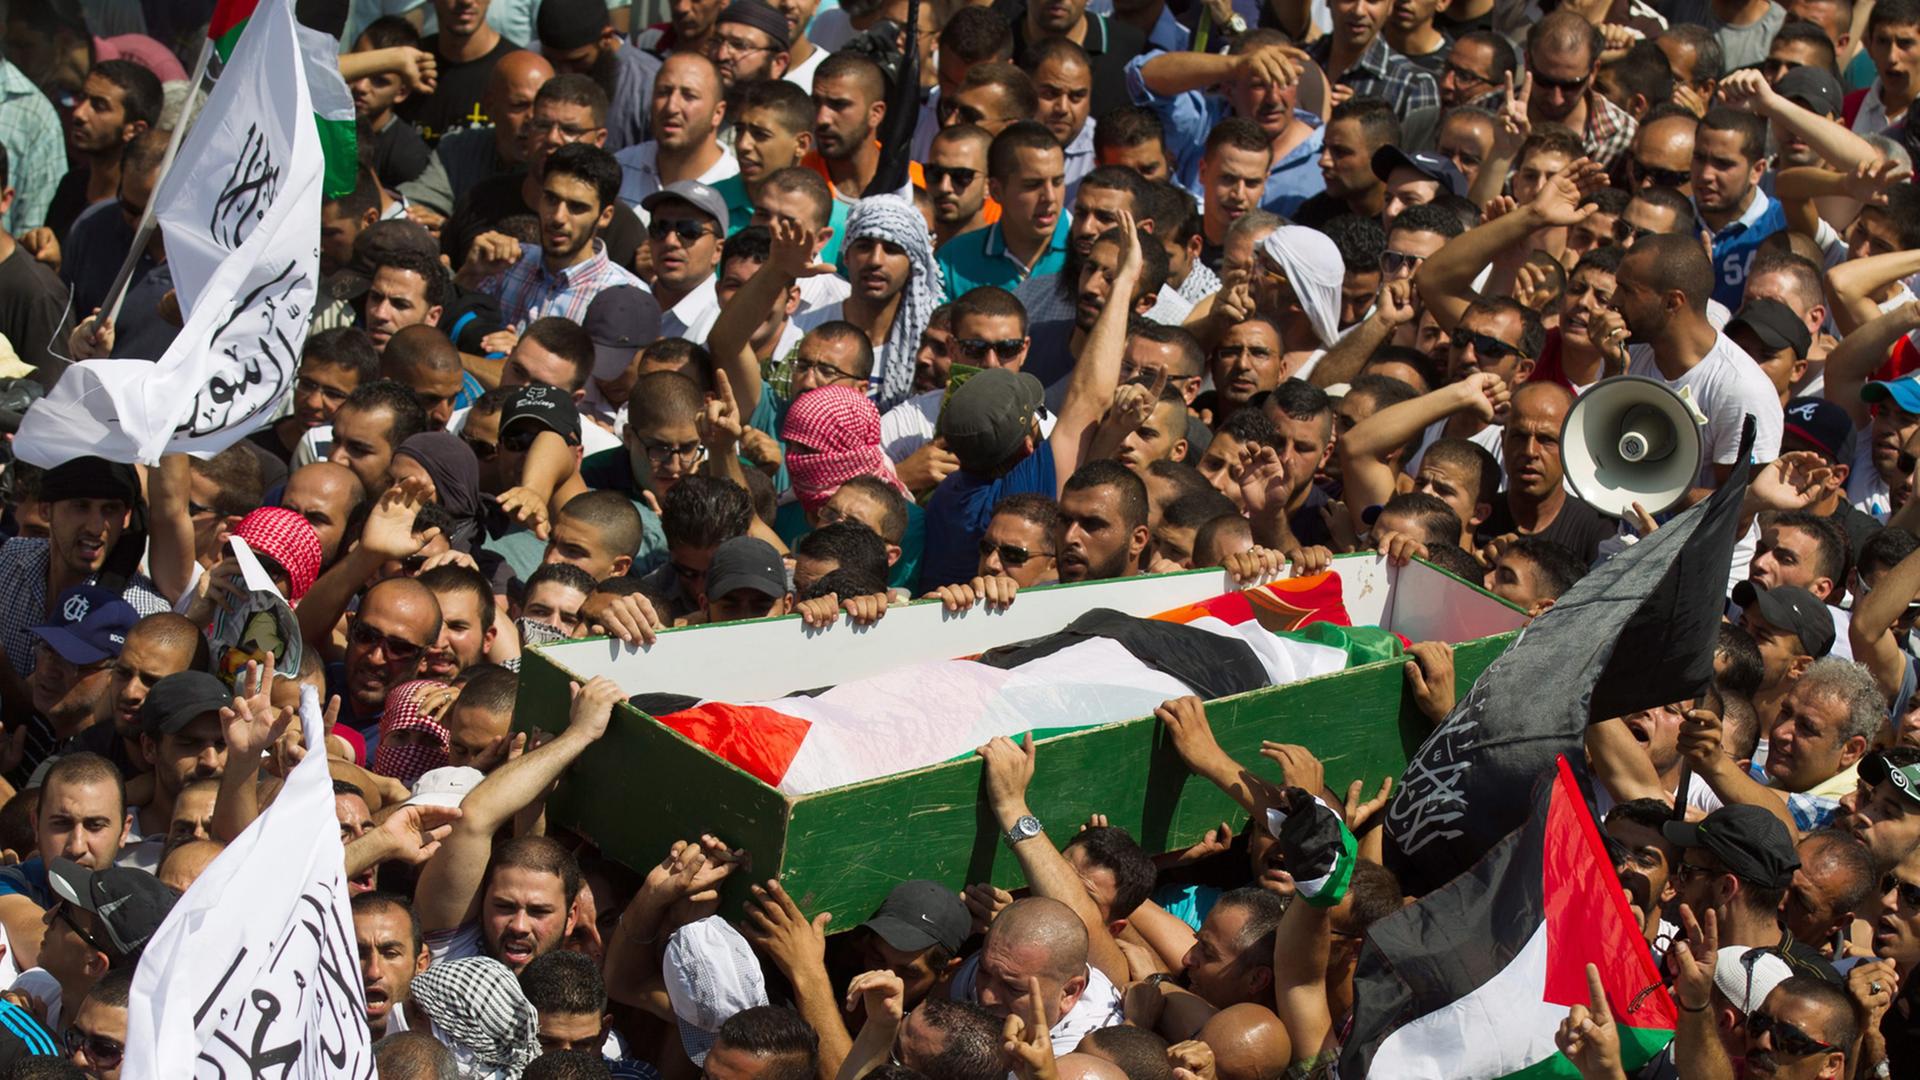 Der Sarg mit dem Körper des 16-jährigen Muhammed Abu Khdair wird von einer aufgebrachten Menschenmenge durch Ost-Jerusalem getragen.